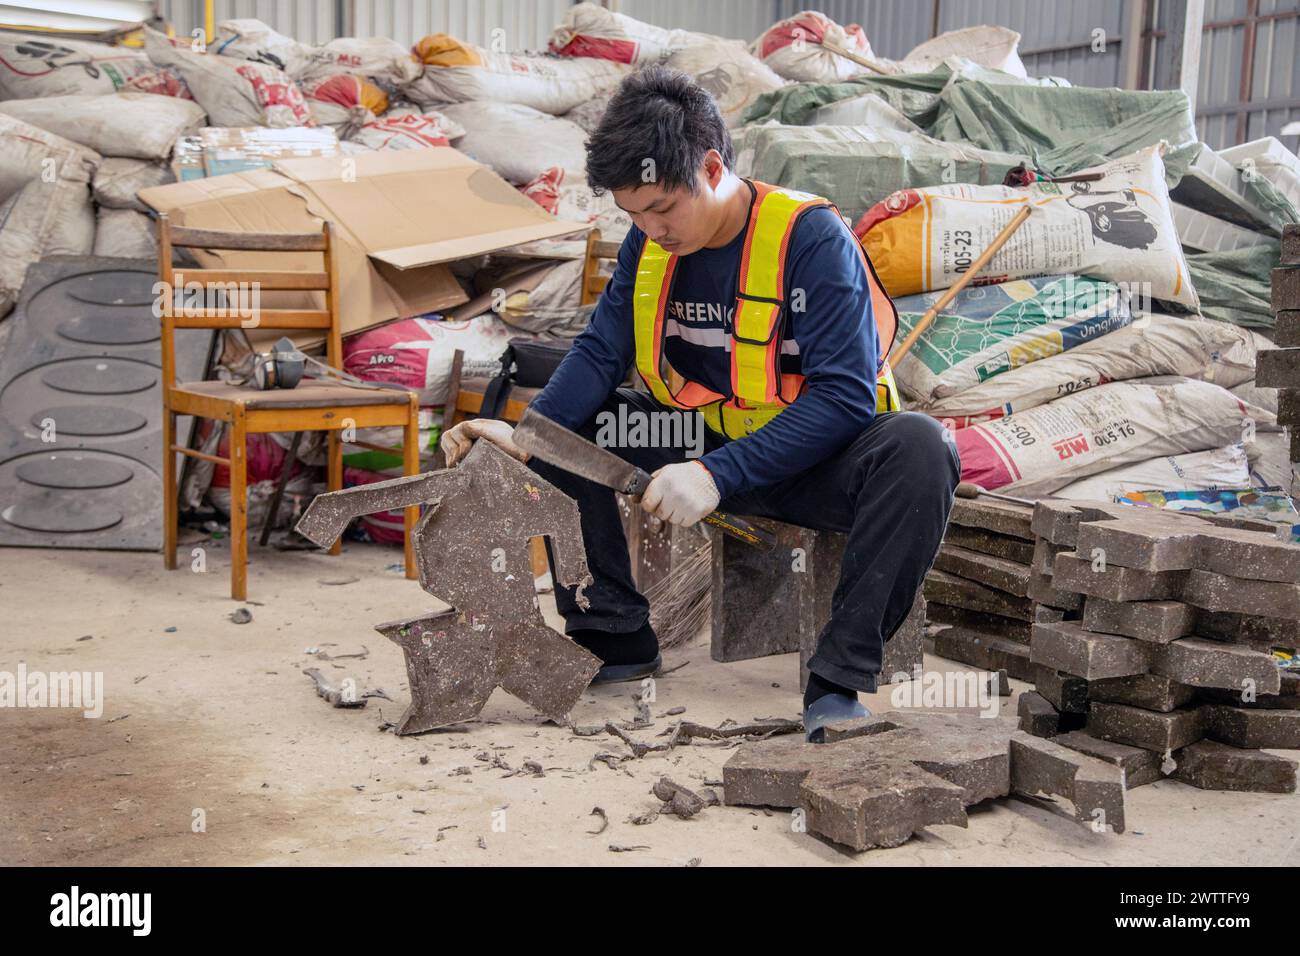 Travailleur triant des matériaux dans une installation de recyclage, Thaïlande Banque D'Images